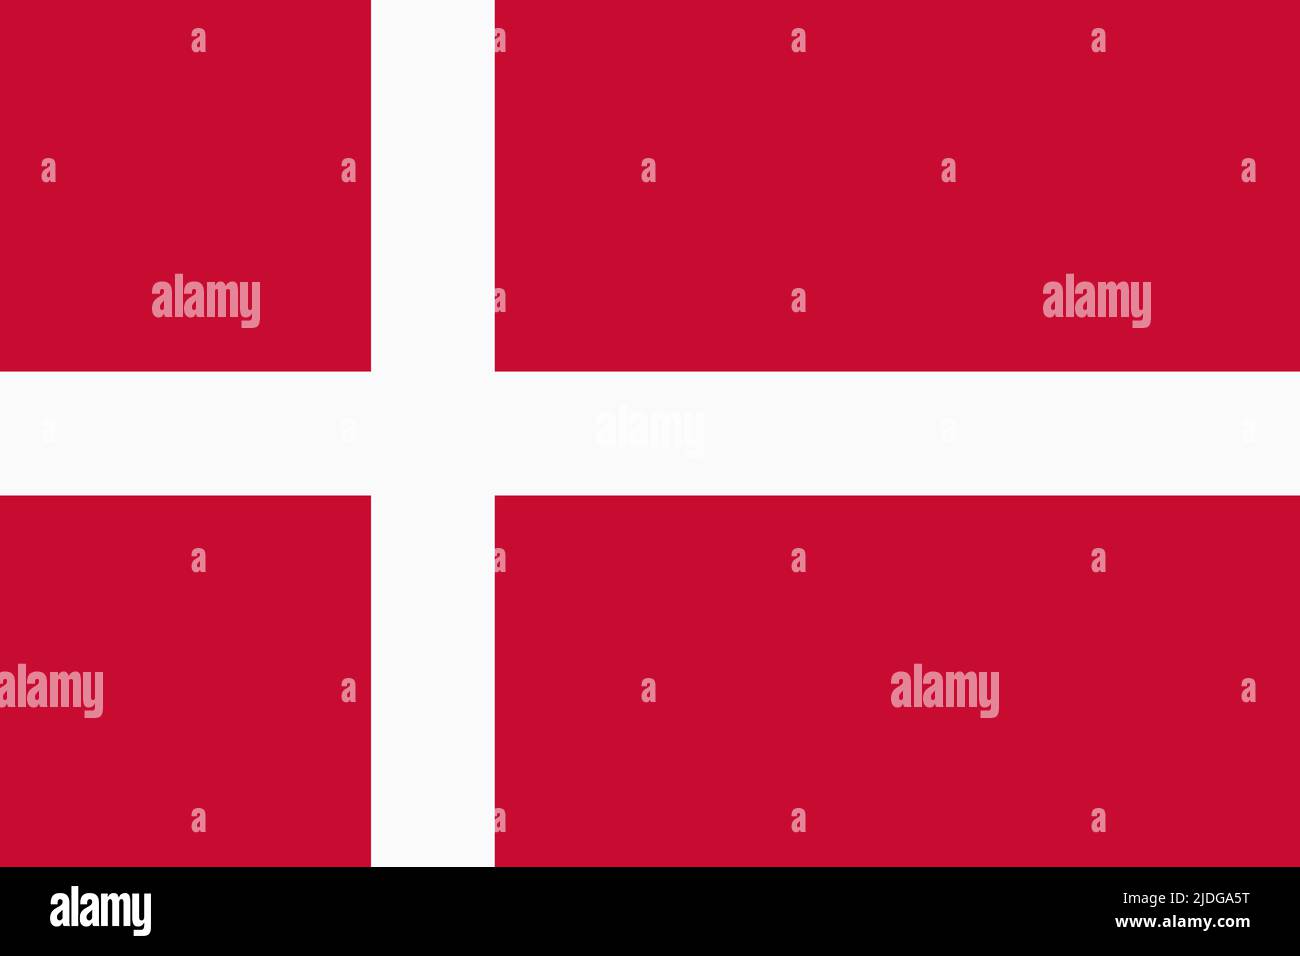 Flagge Dänemarks. Dänisches nationales Banner und patriotisches Symbol. Offizielle Farben. Flache Vektorgrafik. Stock Vektor